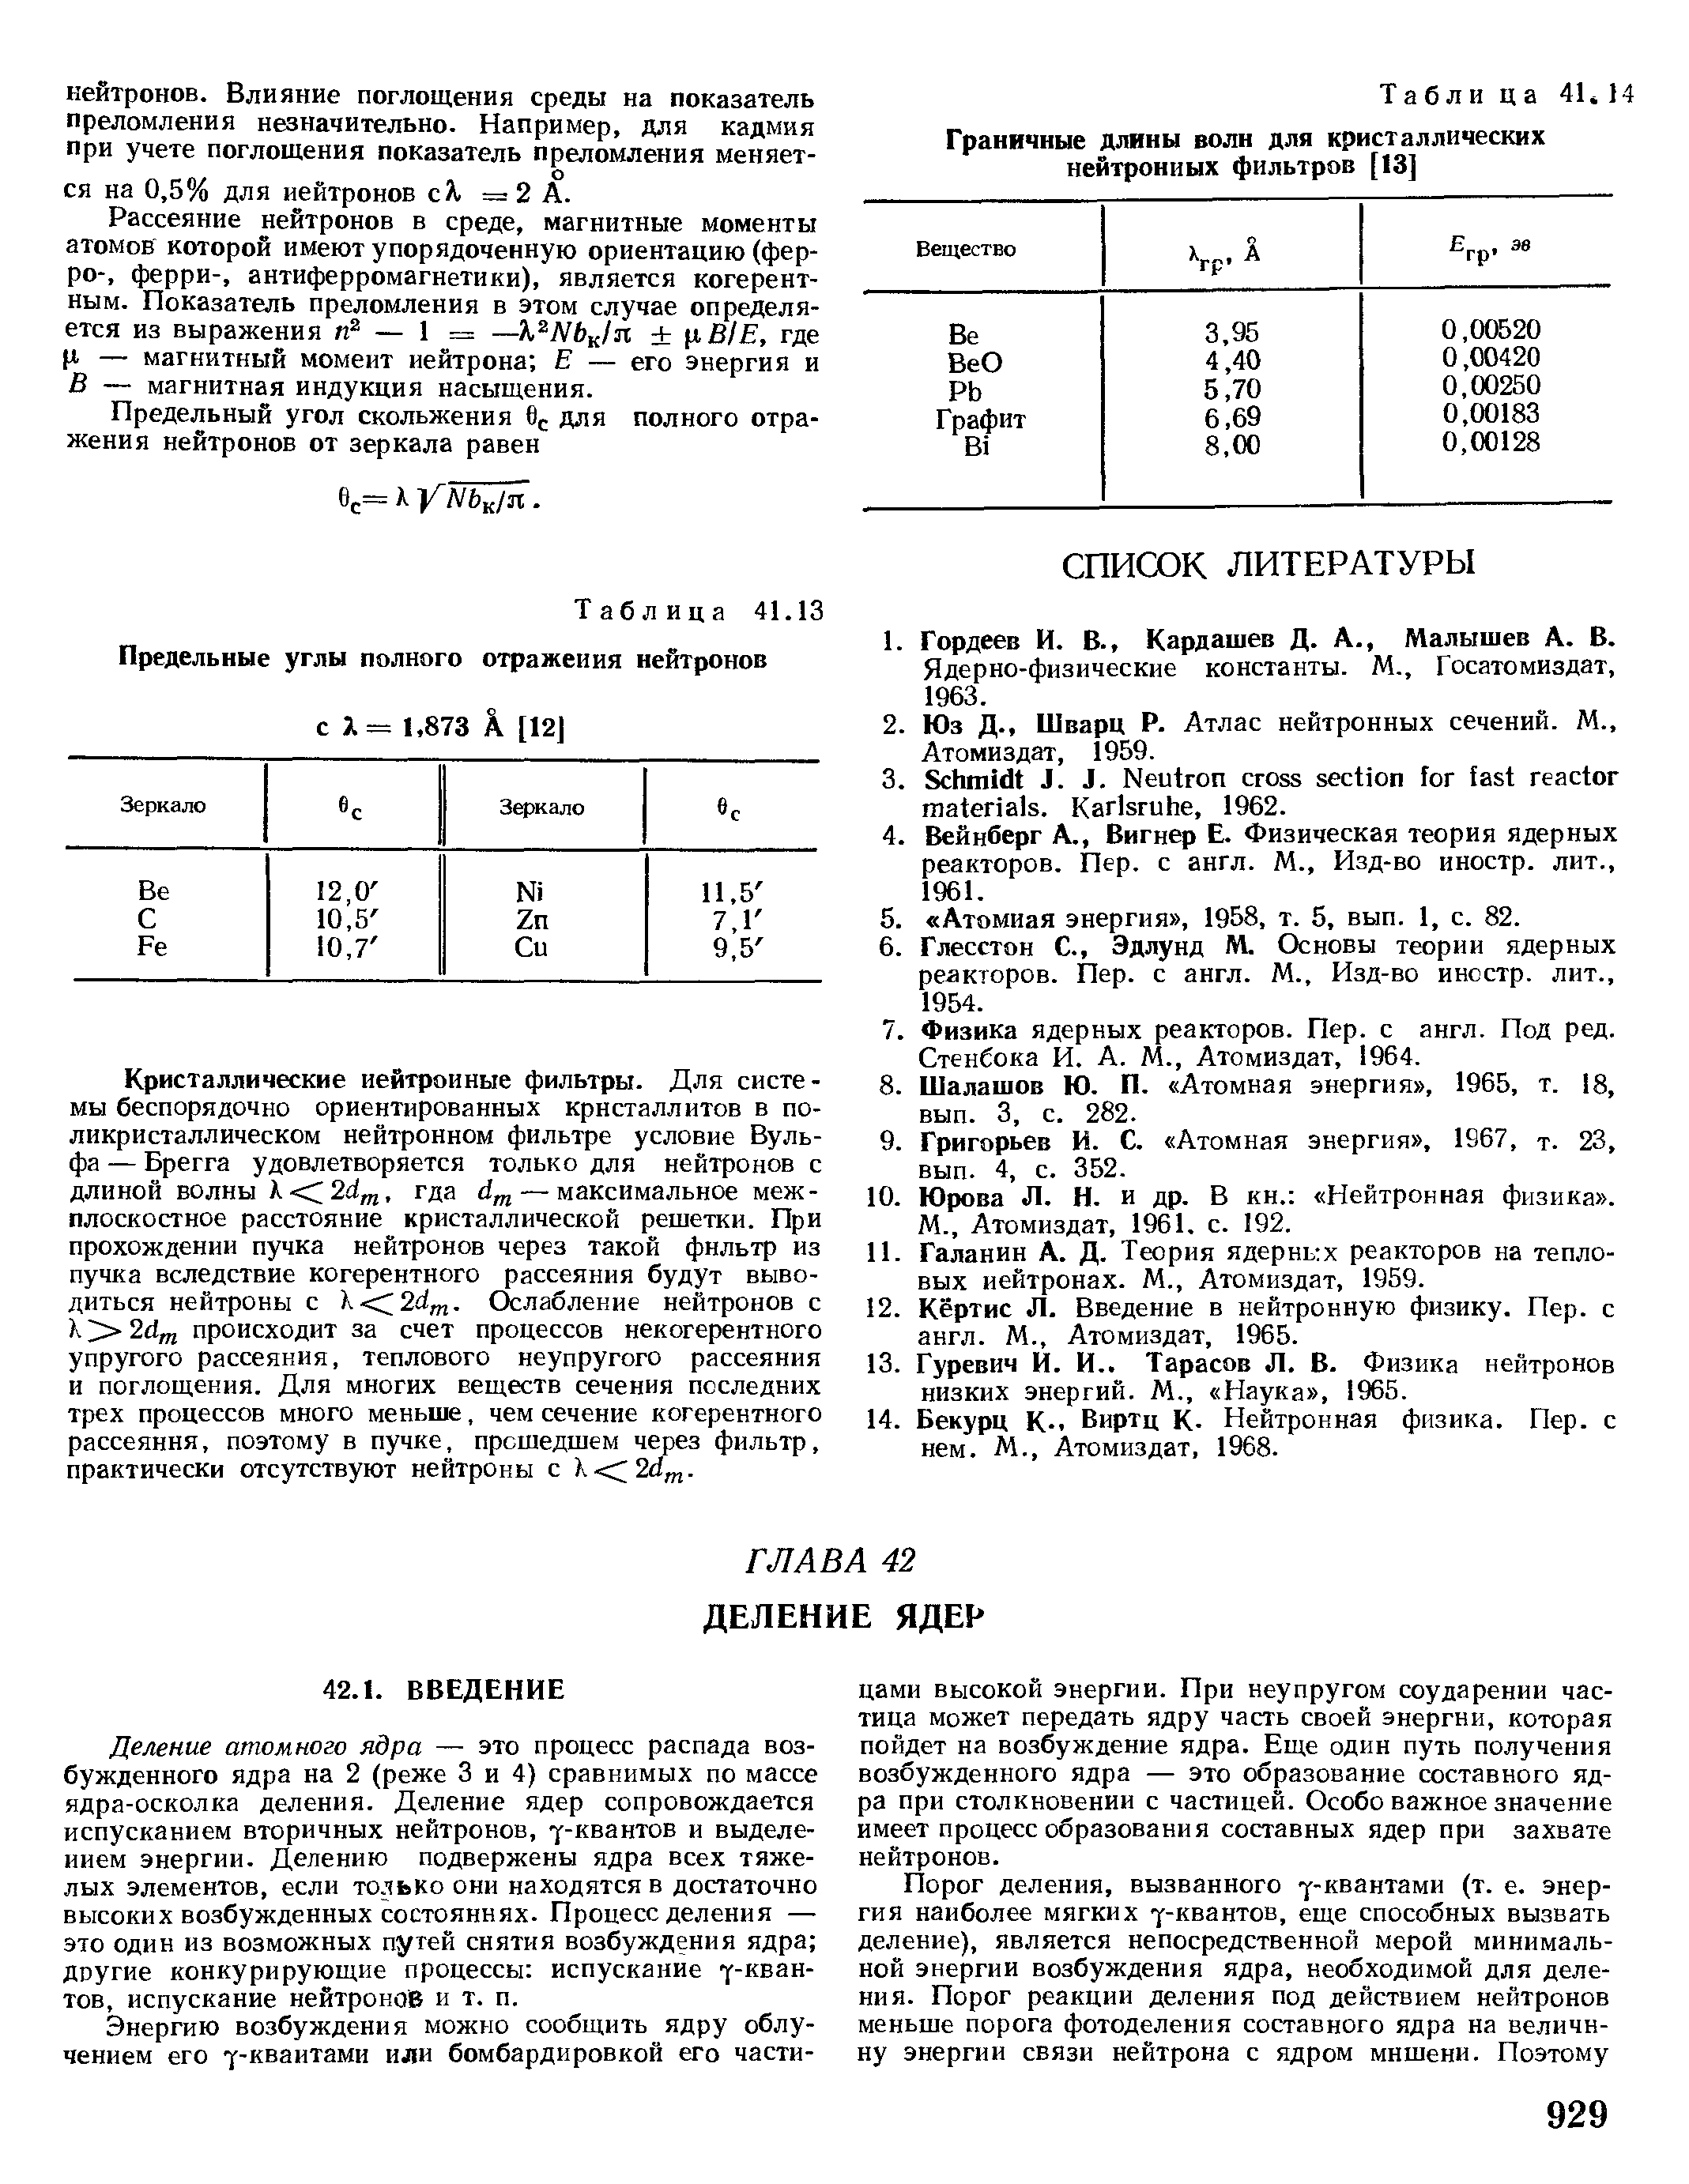 Ядерно-физические константы. М., Госатомиздат, 1963.
